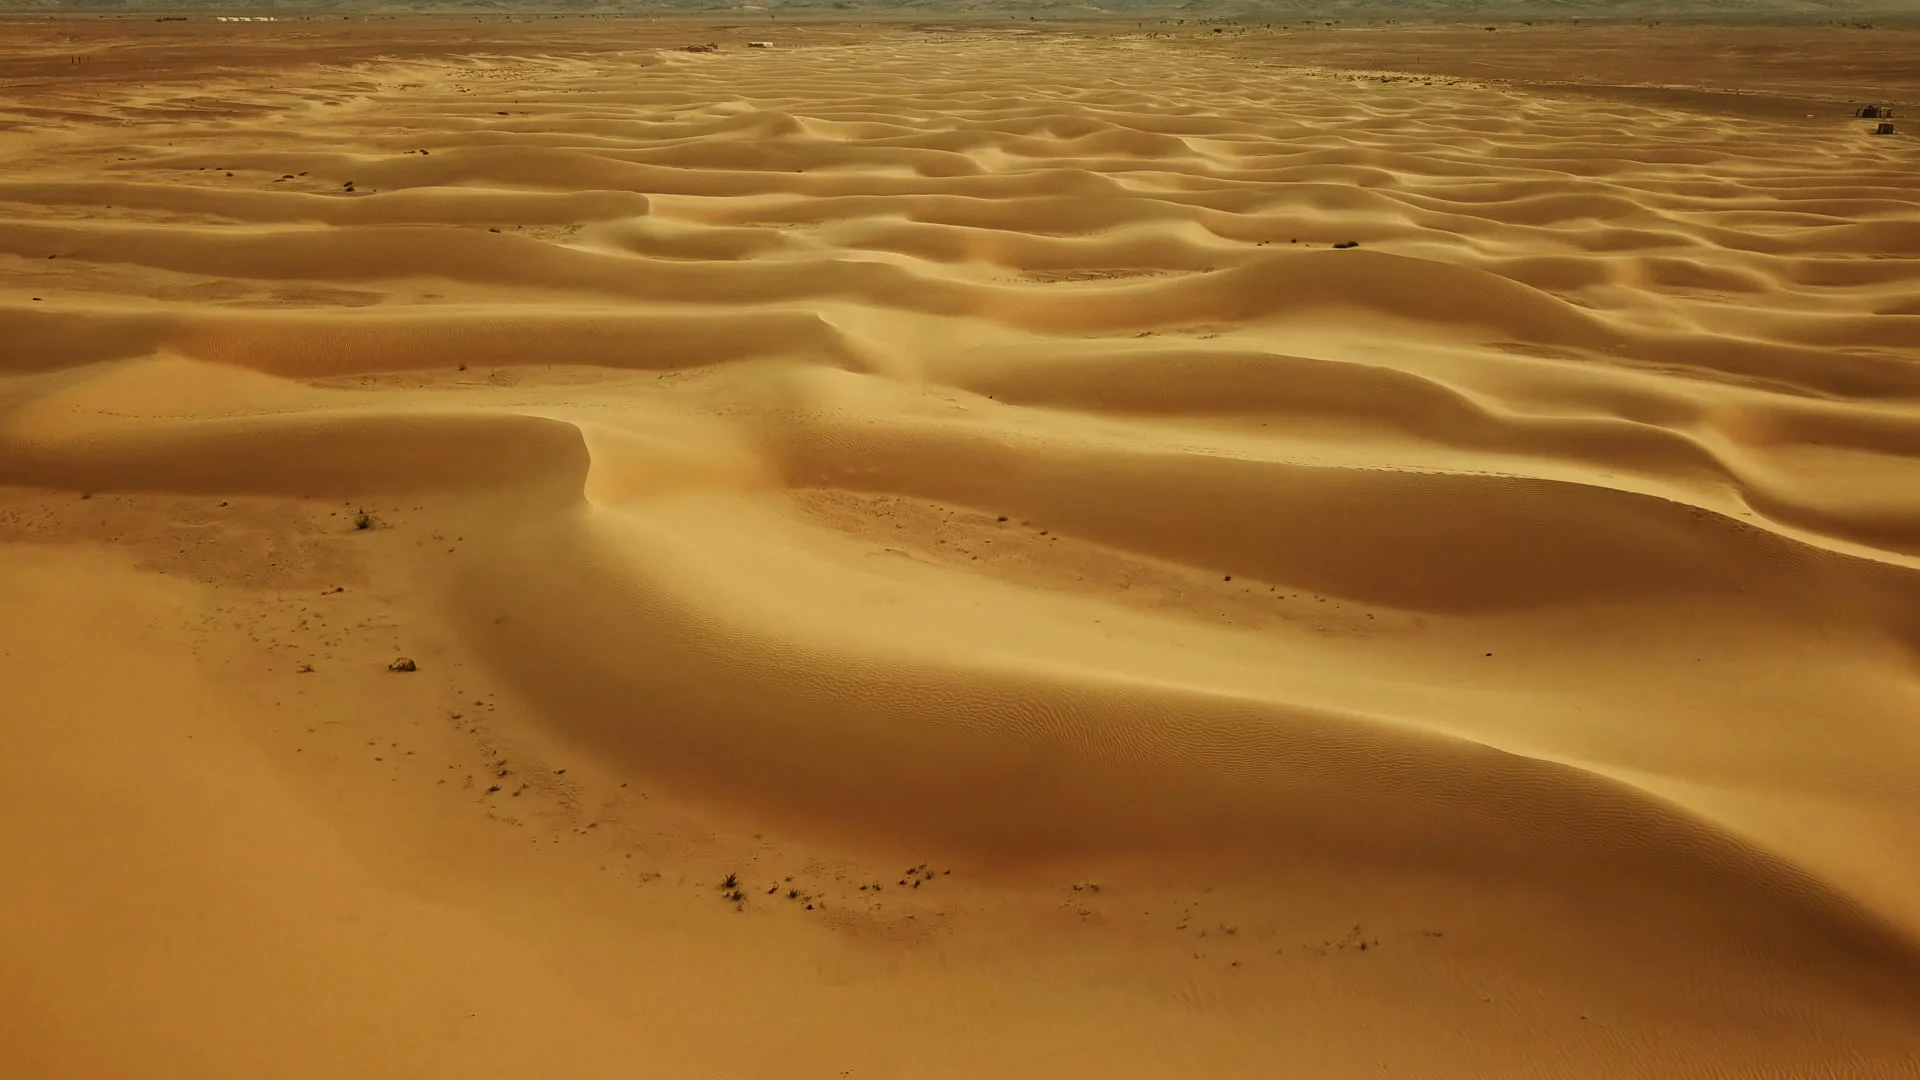 https://images.pond5.com/flying-over-sand-dunes-sahara-087815998_prevstill.jpeg